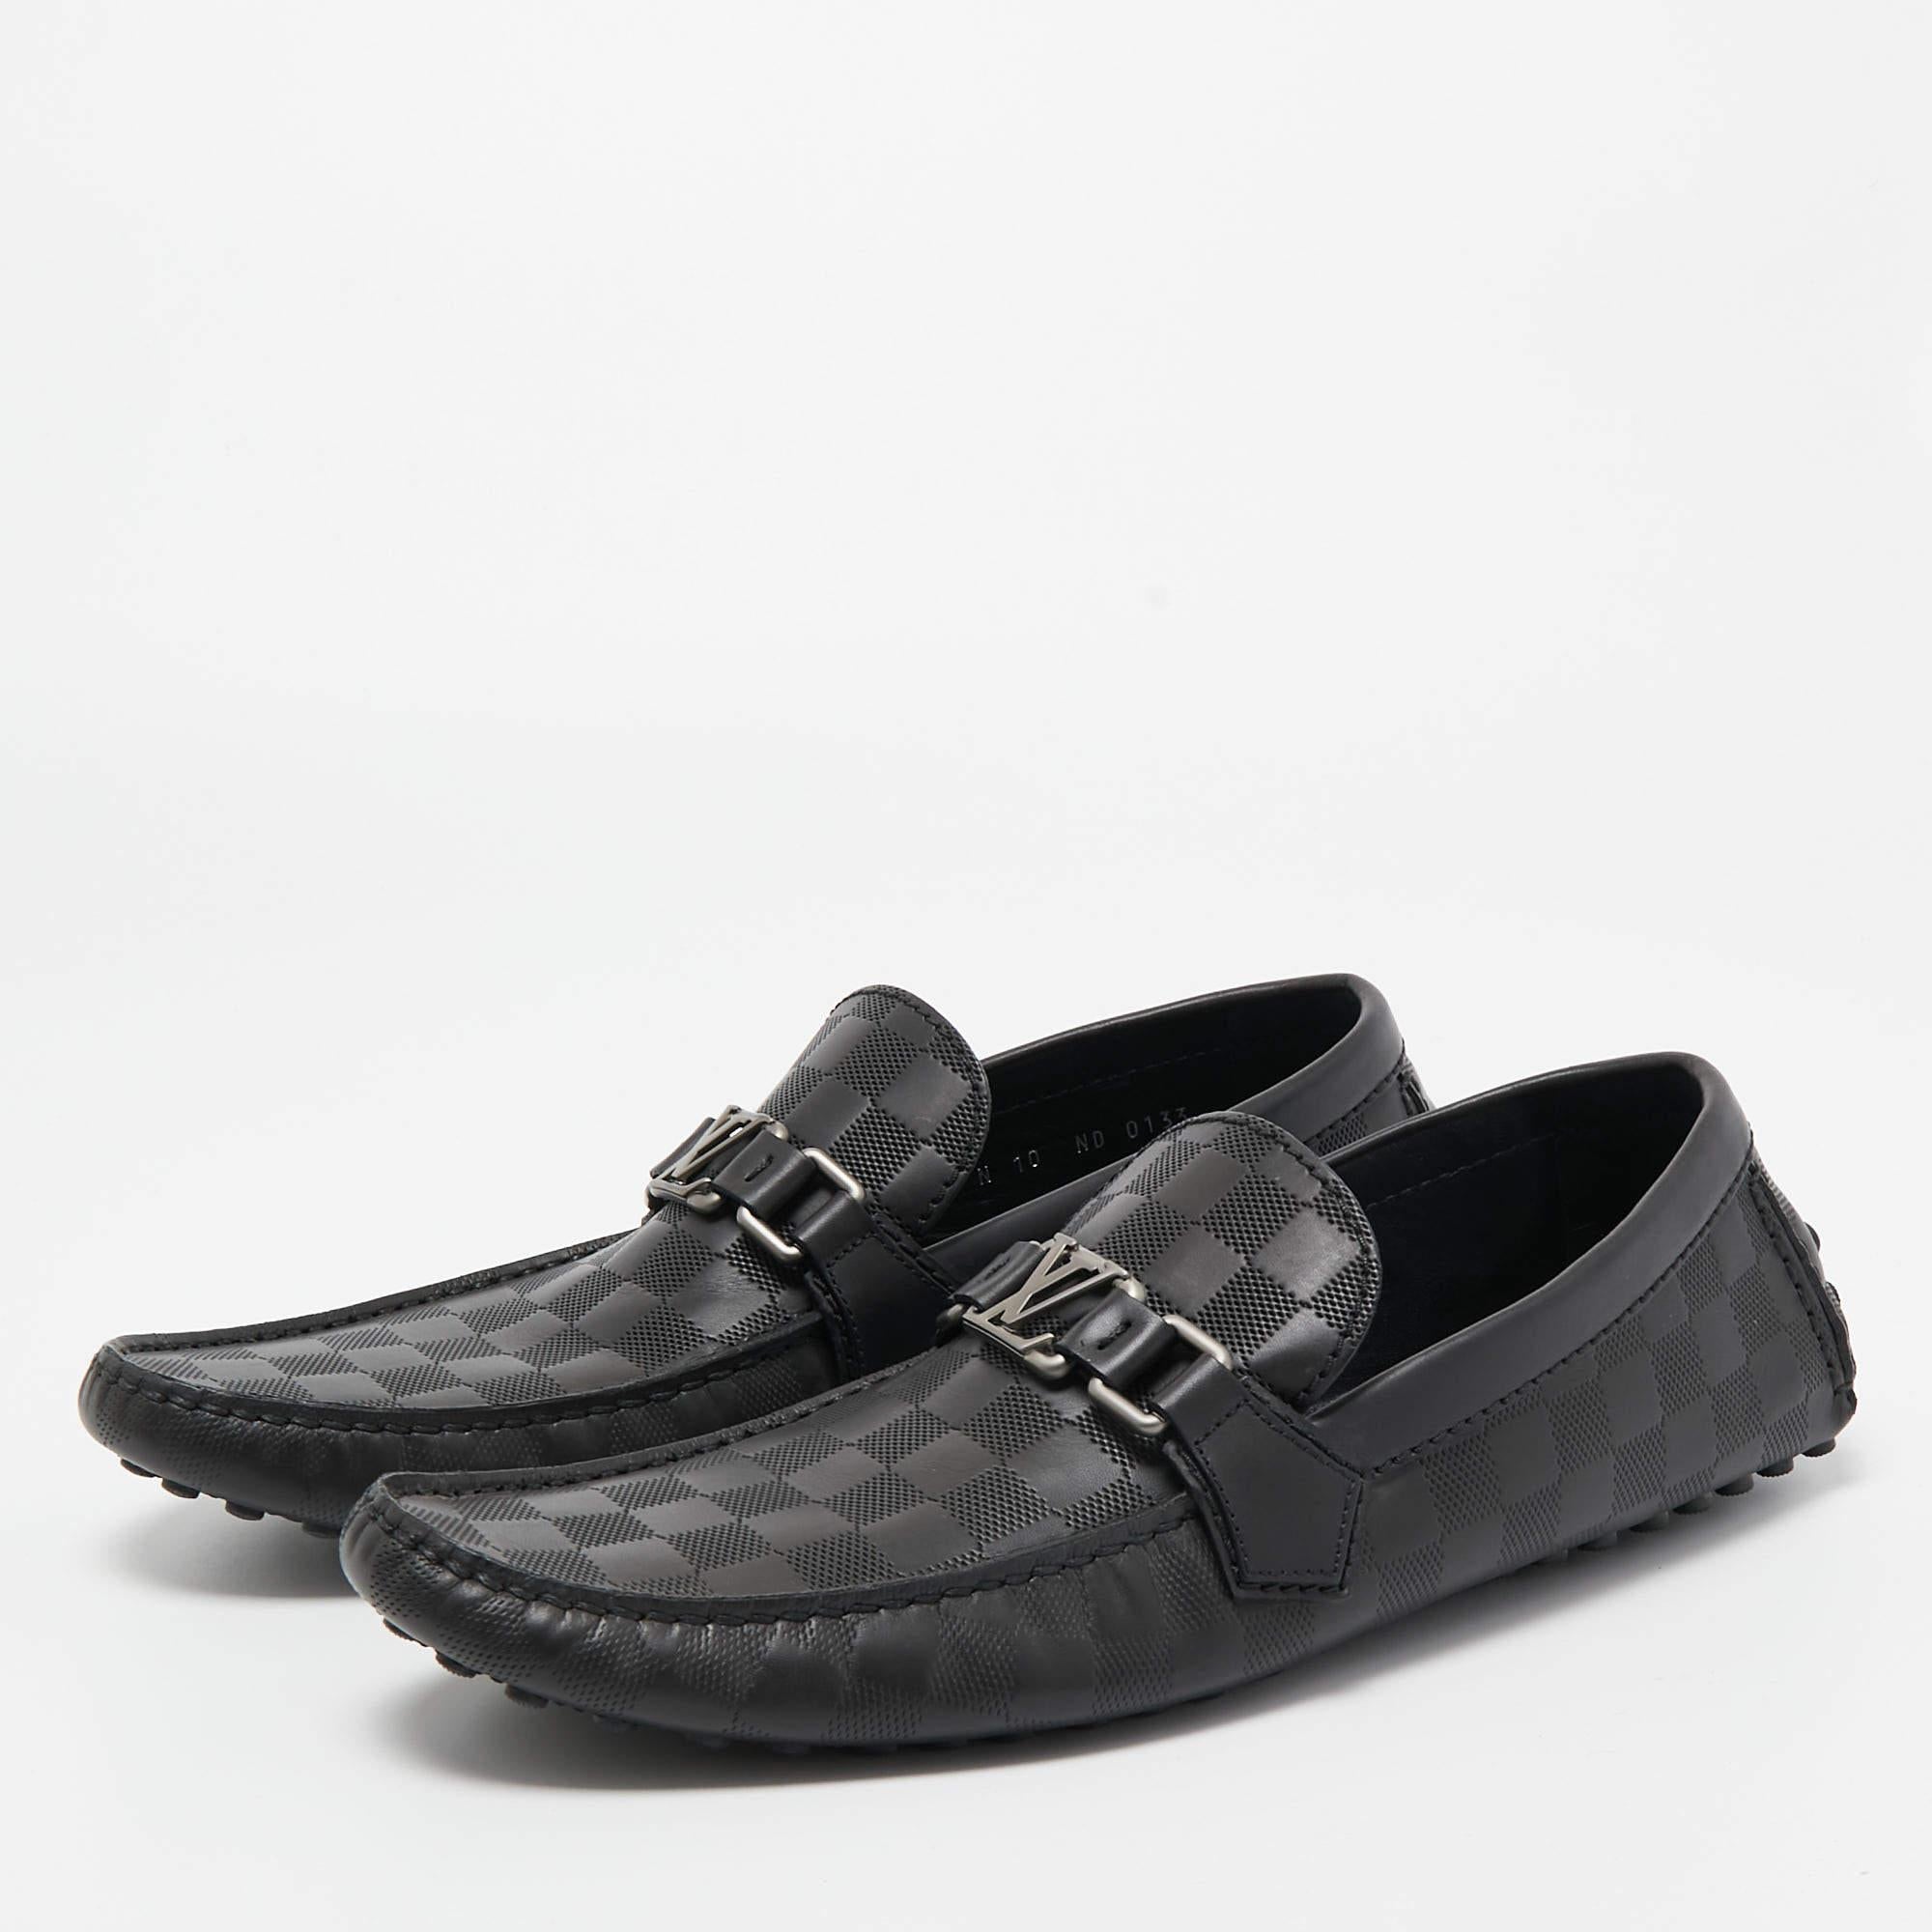 Men's Louis Vuitton Black Damier Graphite Leather Driver Loafers Size 44